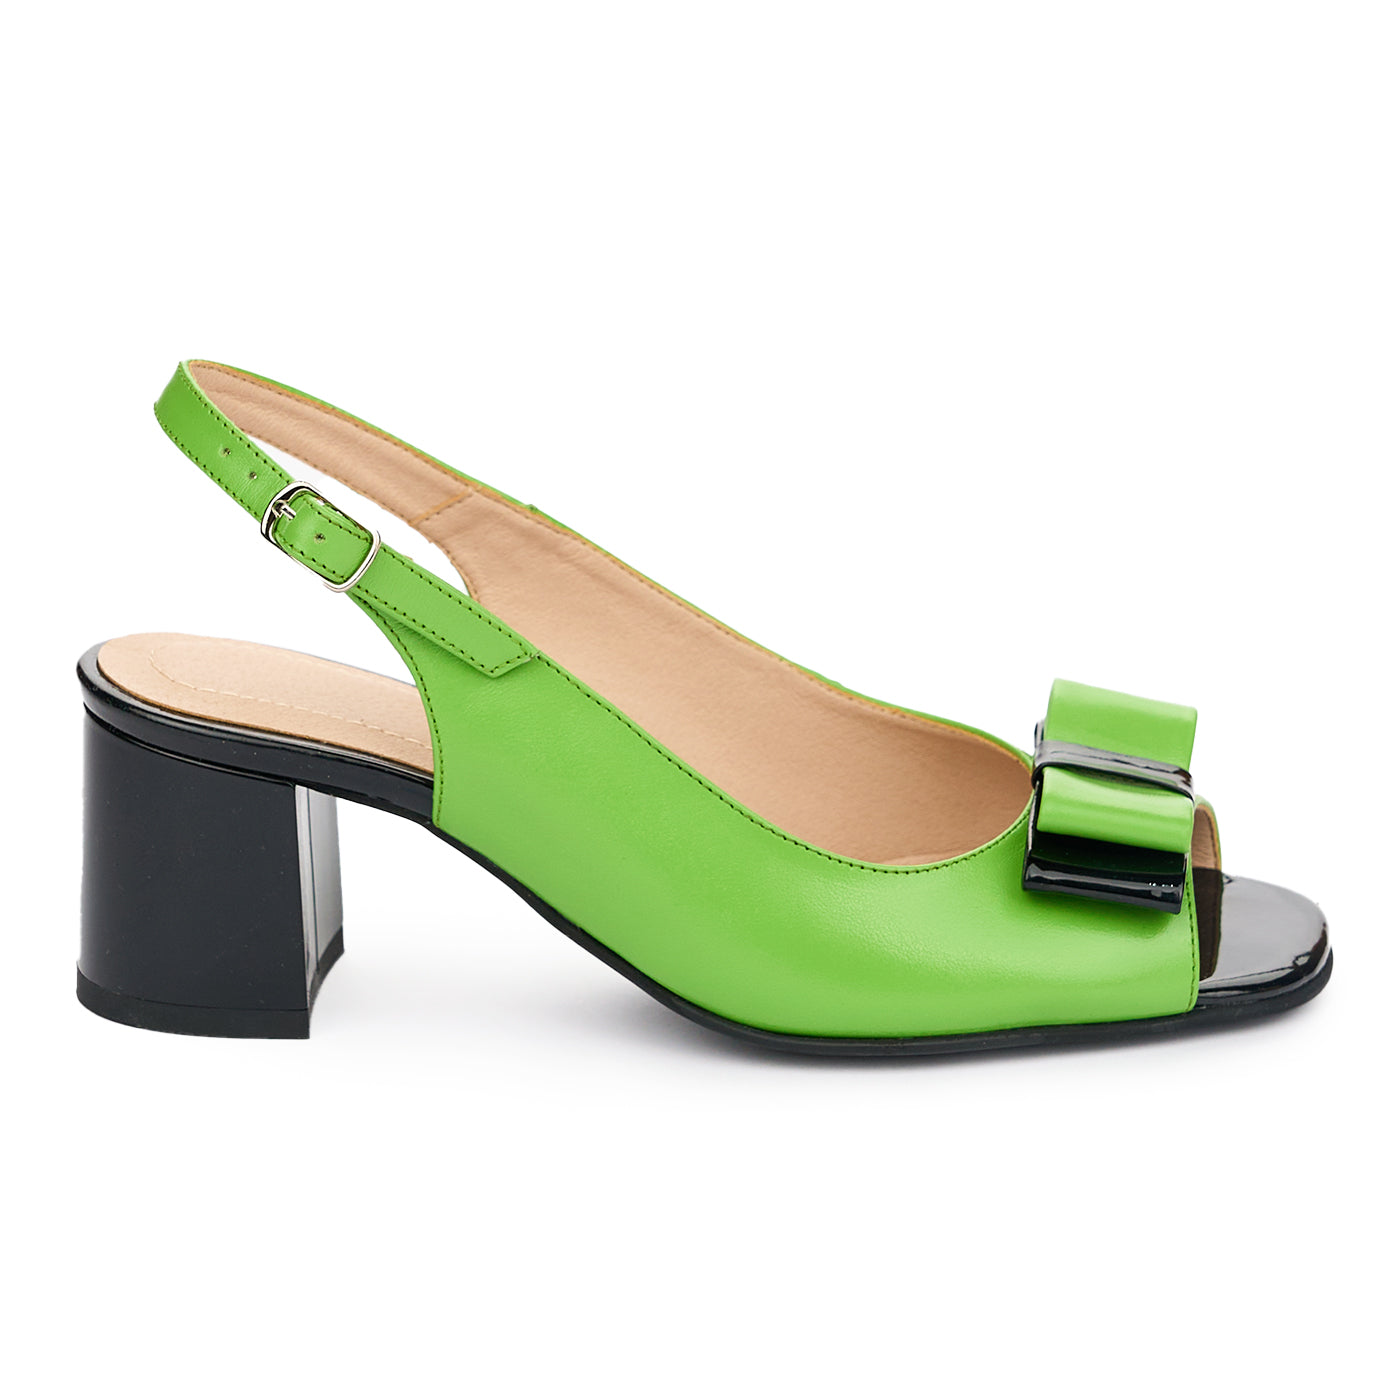 Sandale dama din piele naturala verde cu toc 5.5cm 13089